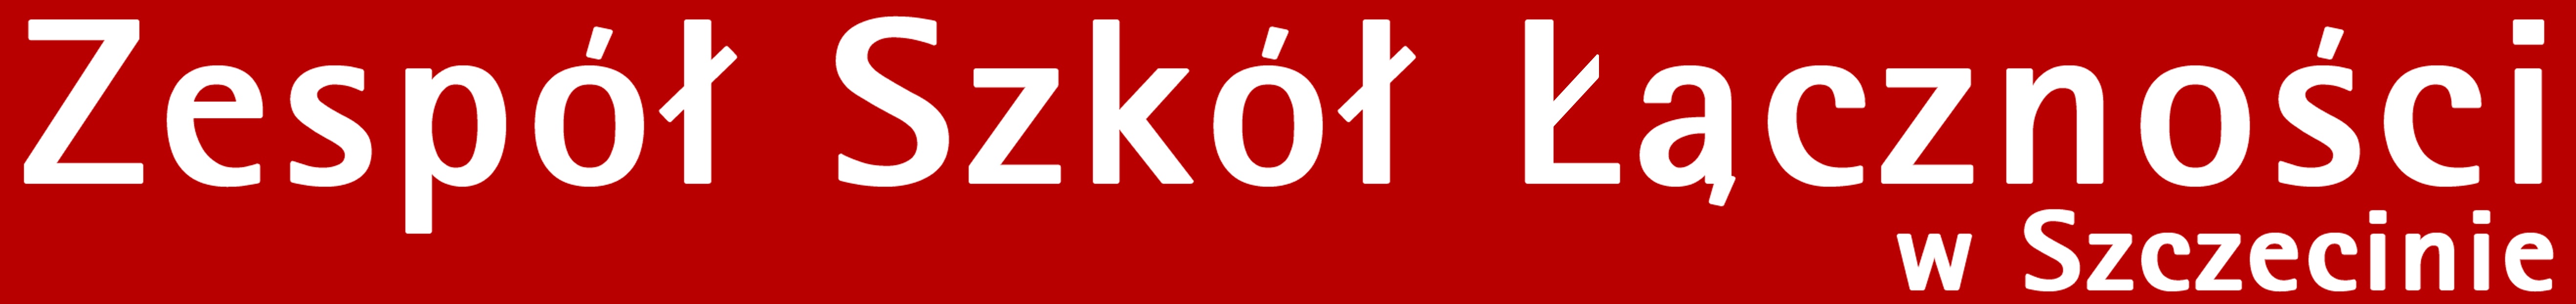 logo BIP Zepsołu Szkół Łączności w Szczecinie